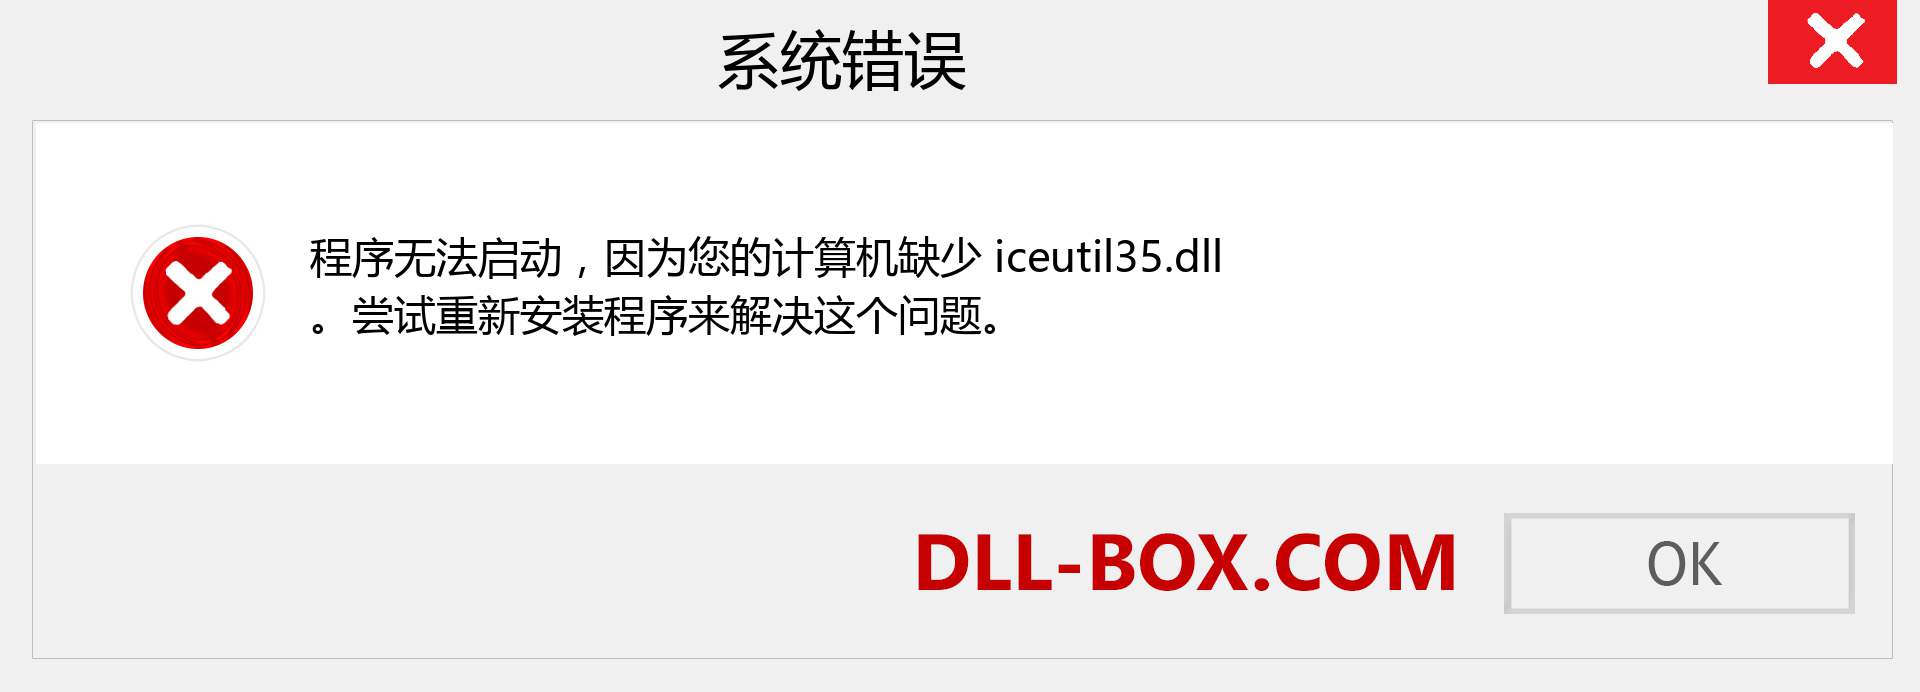 iceutil35.dll 文件丢失？。 适用于 Windows 7、8、10 的下载 - 修复 Windows、照片、图像上的 iceutil35 dll 丢失错误